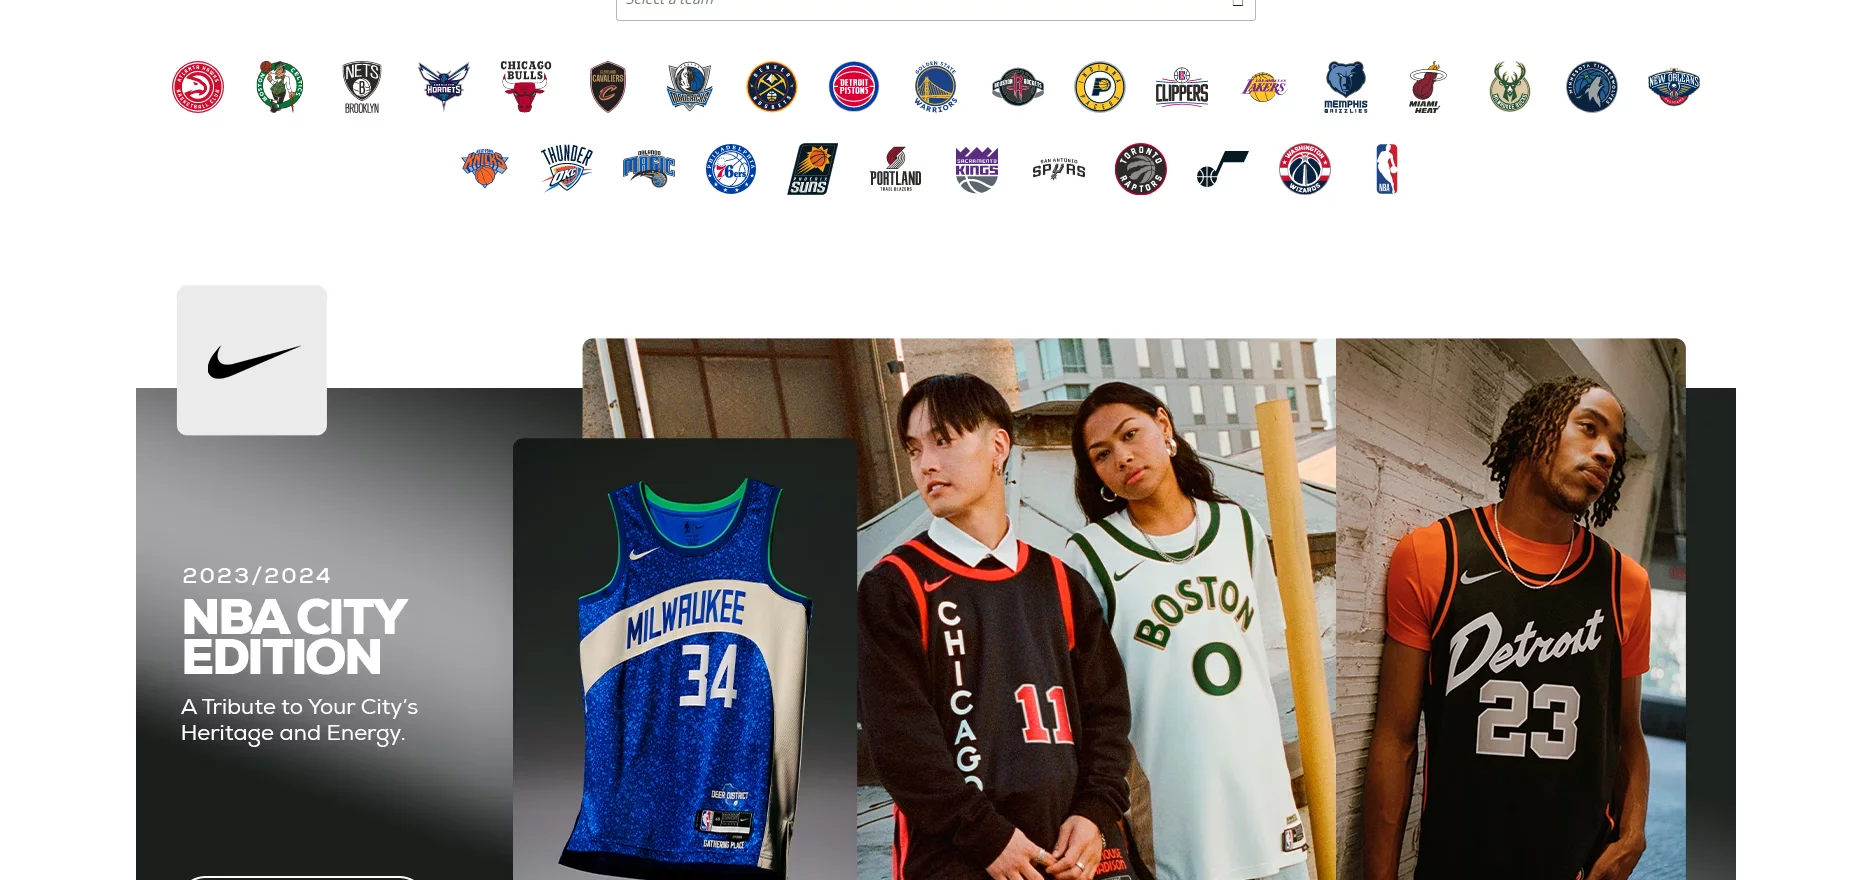 Best NBA Merchandise Dropshipping Suppliers 2: Fanatics